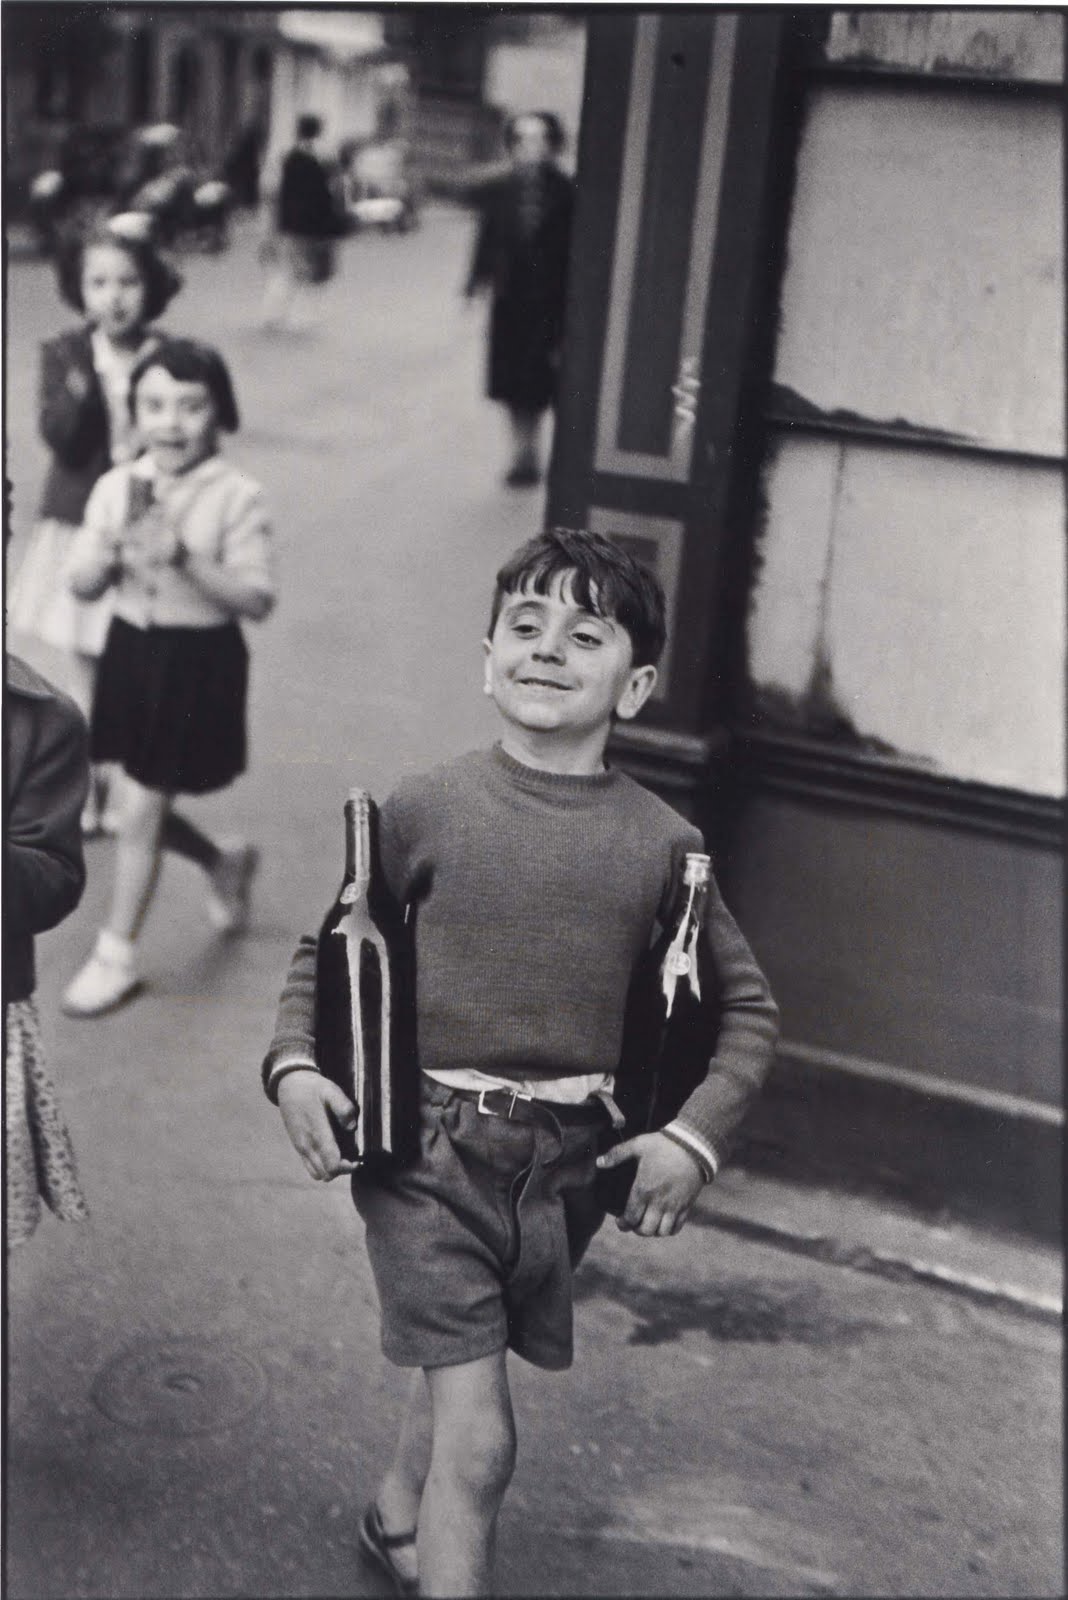 Como un niño de pan José del Carmen Palacios Aguilar Henri Cartier-Bresson en la Rue Mouffetrad Paris, 1954. Aparece un niño sonriente llevando dos botellas de vino en cada brazo